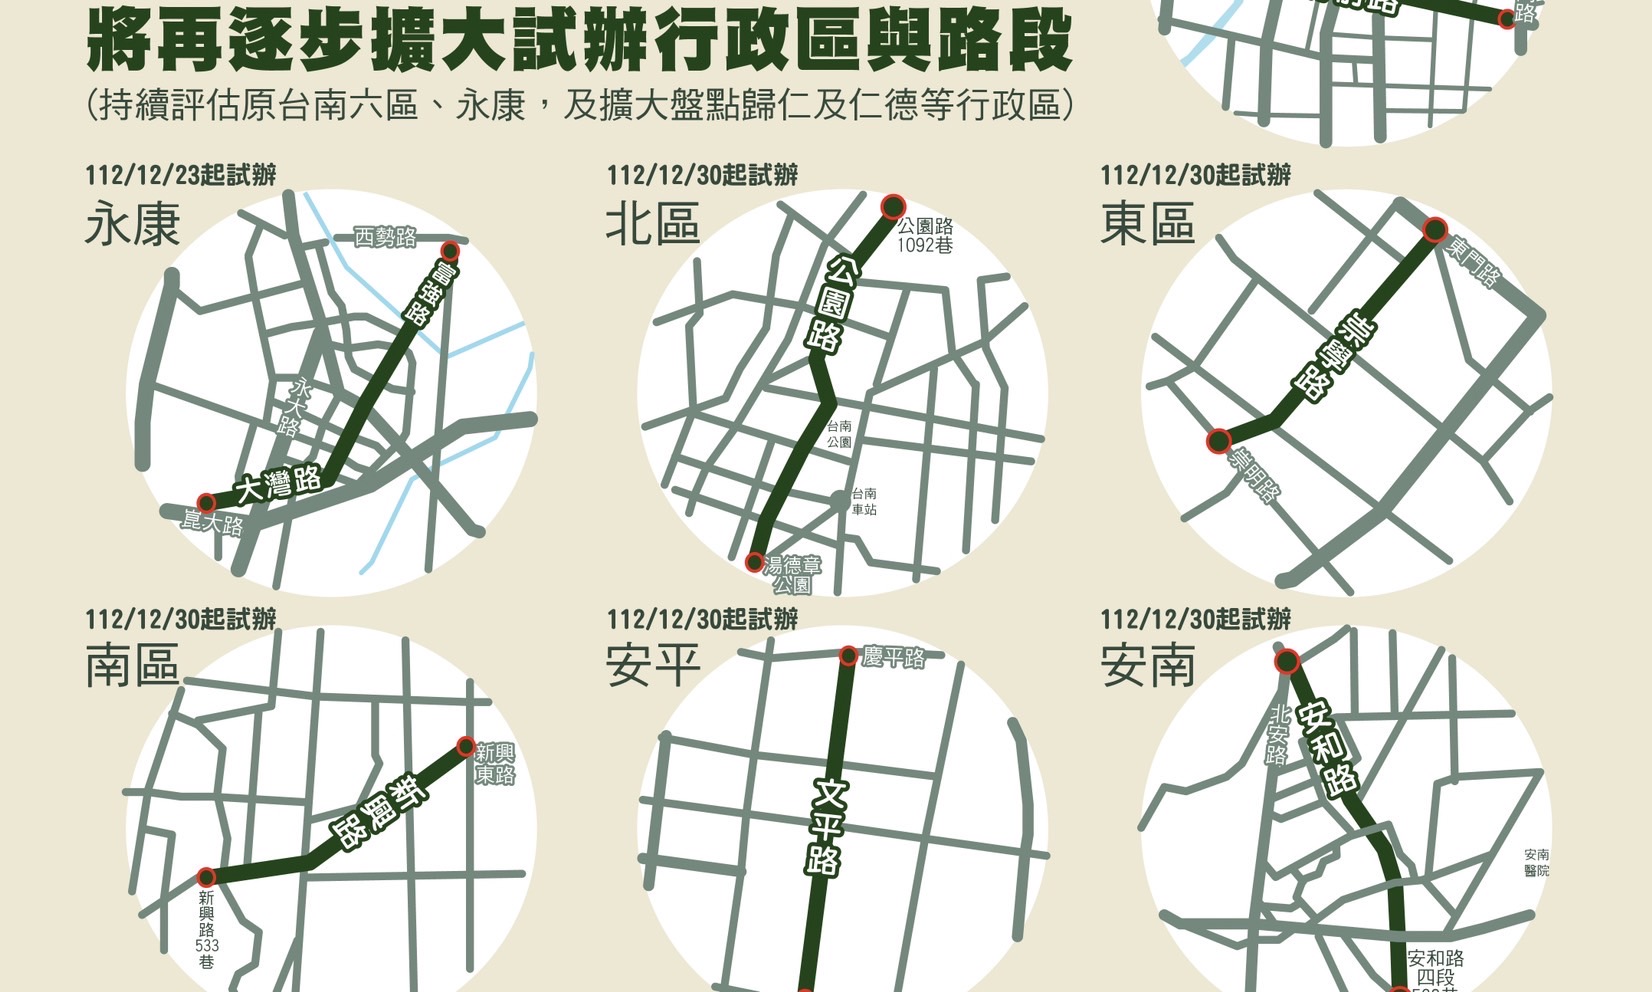 臺南市9路段不強制機車左轉 近3月事故無明顯增加